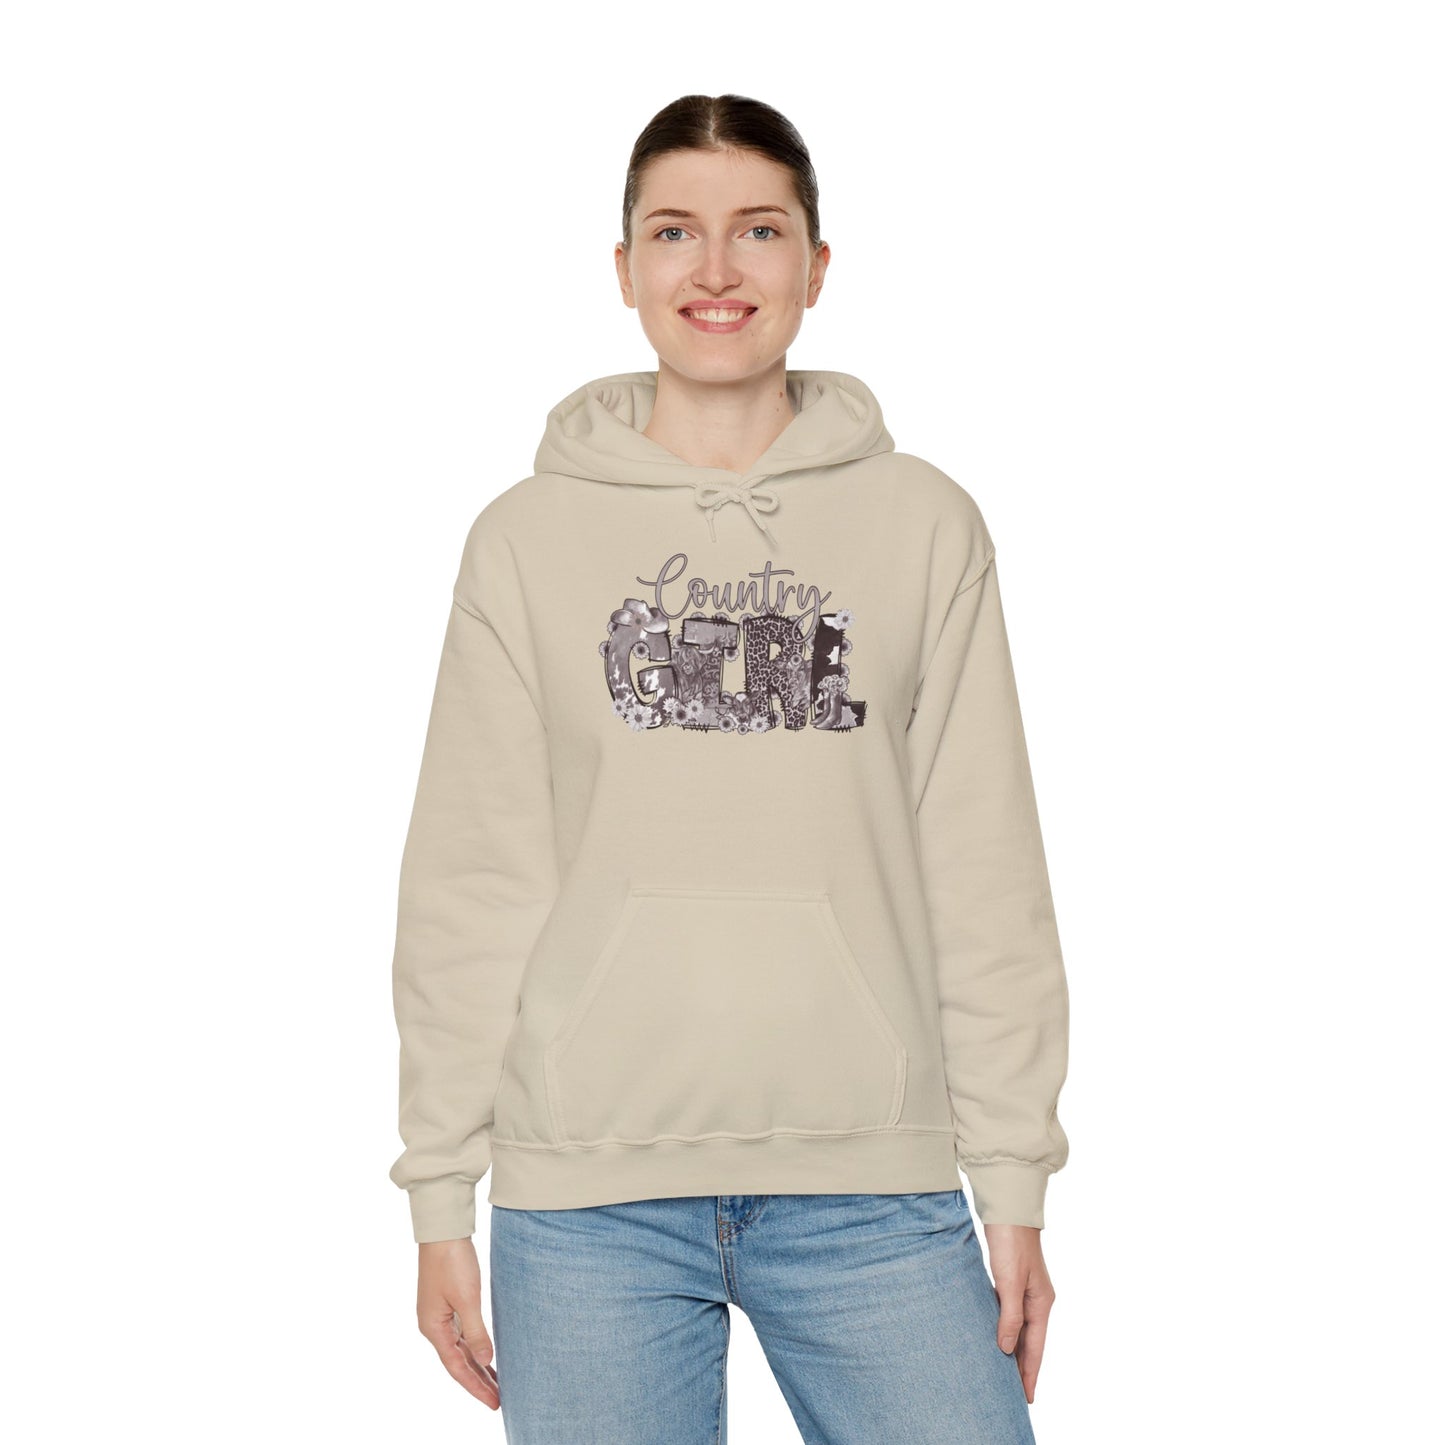 Unisex Hooded outdoor sweatshirt-country girl